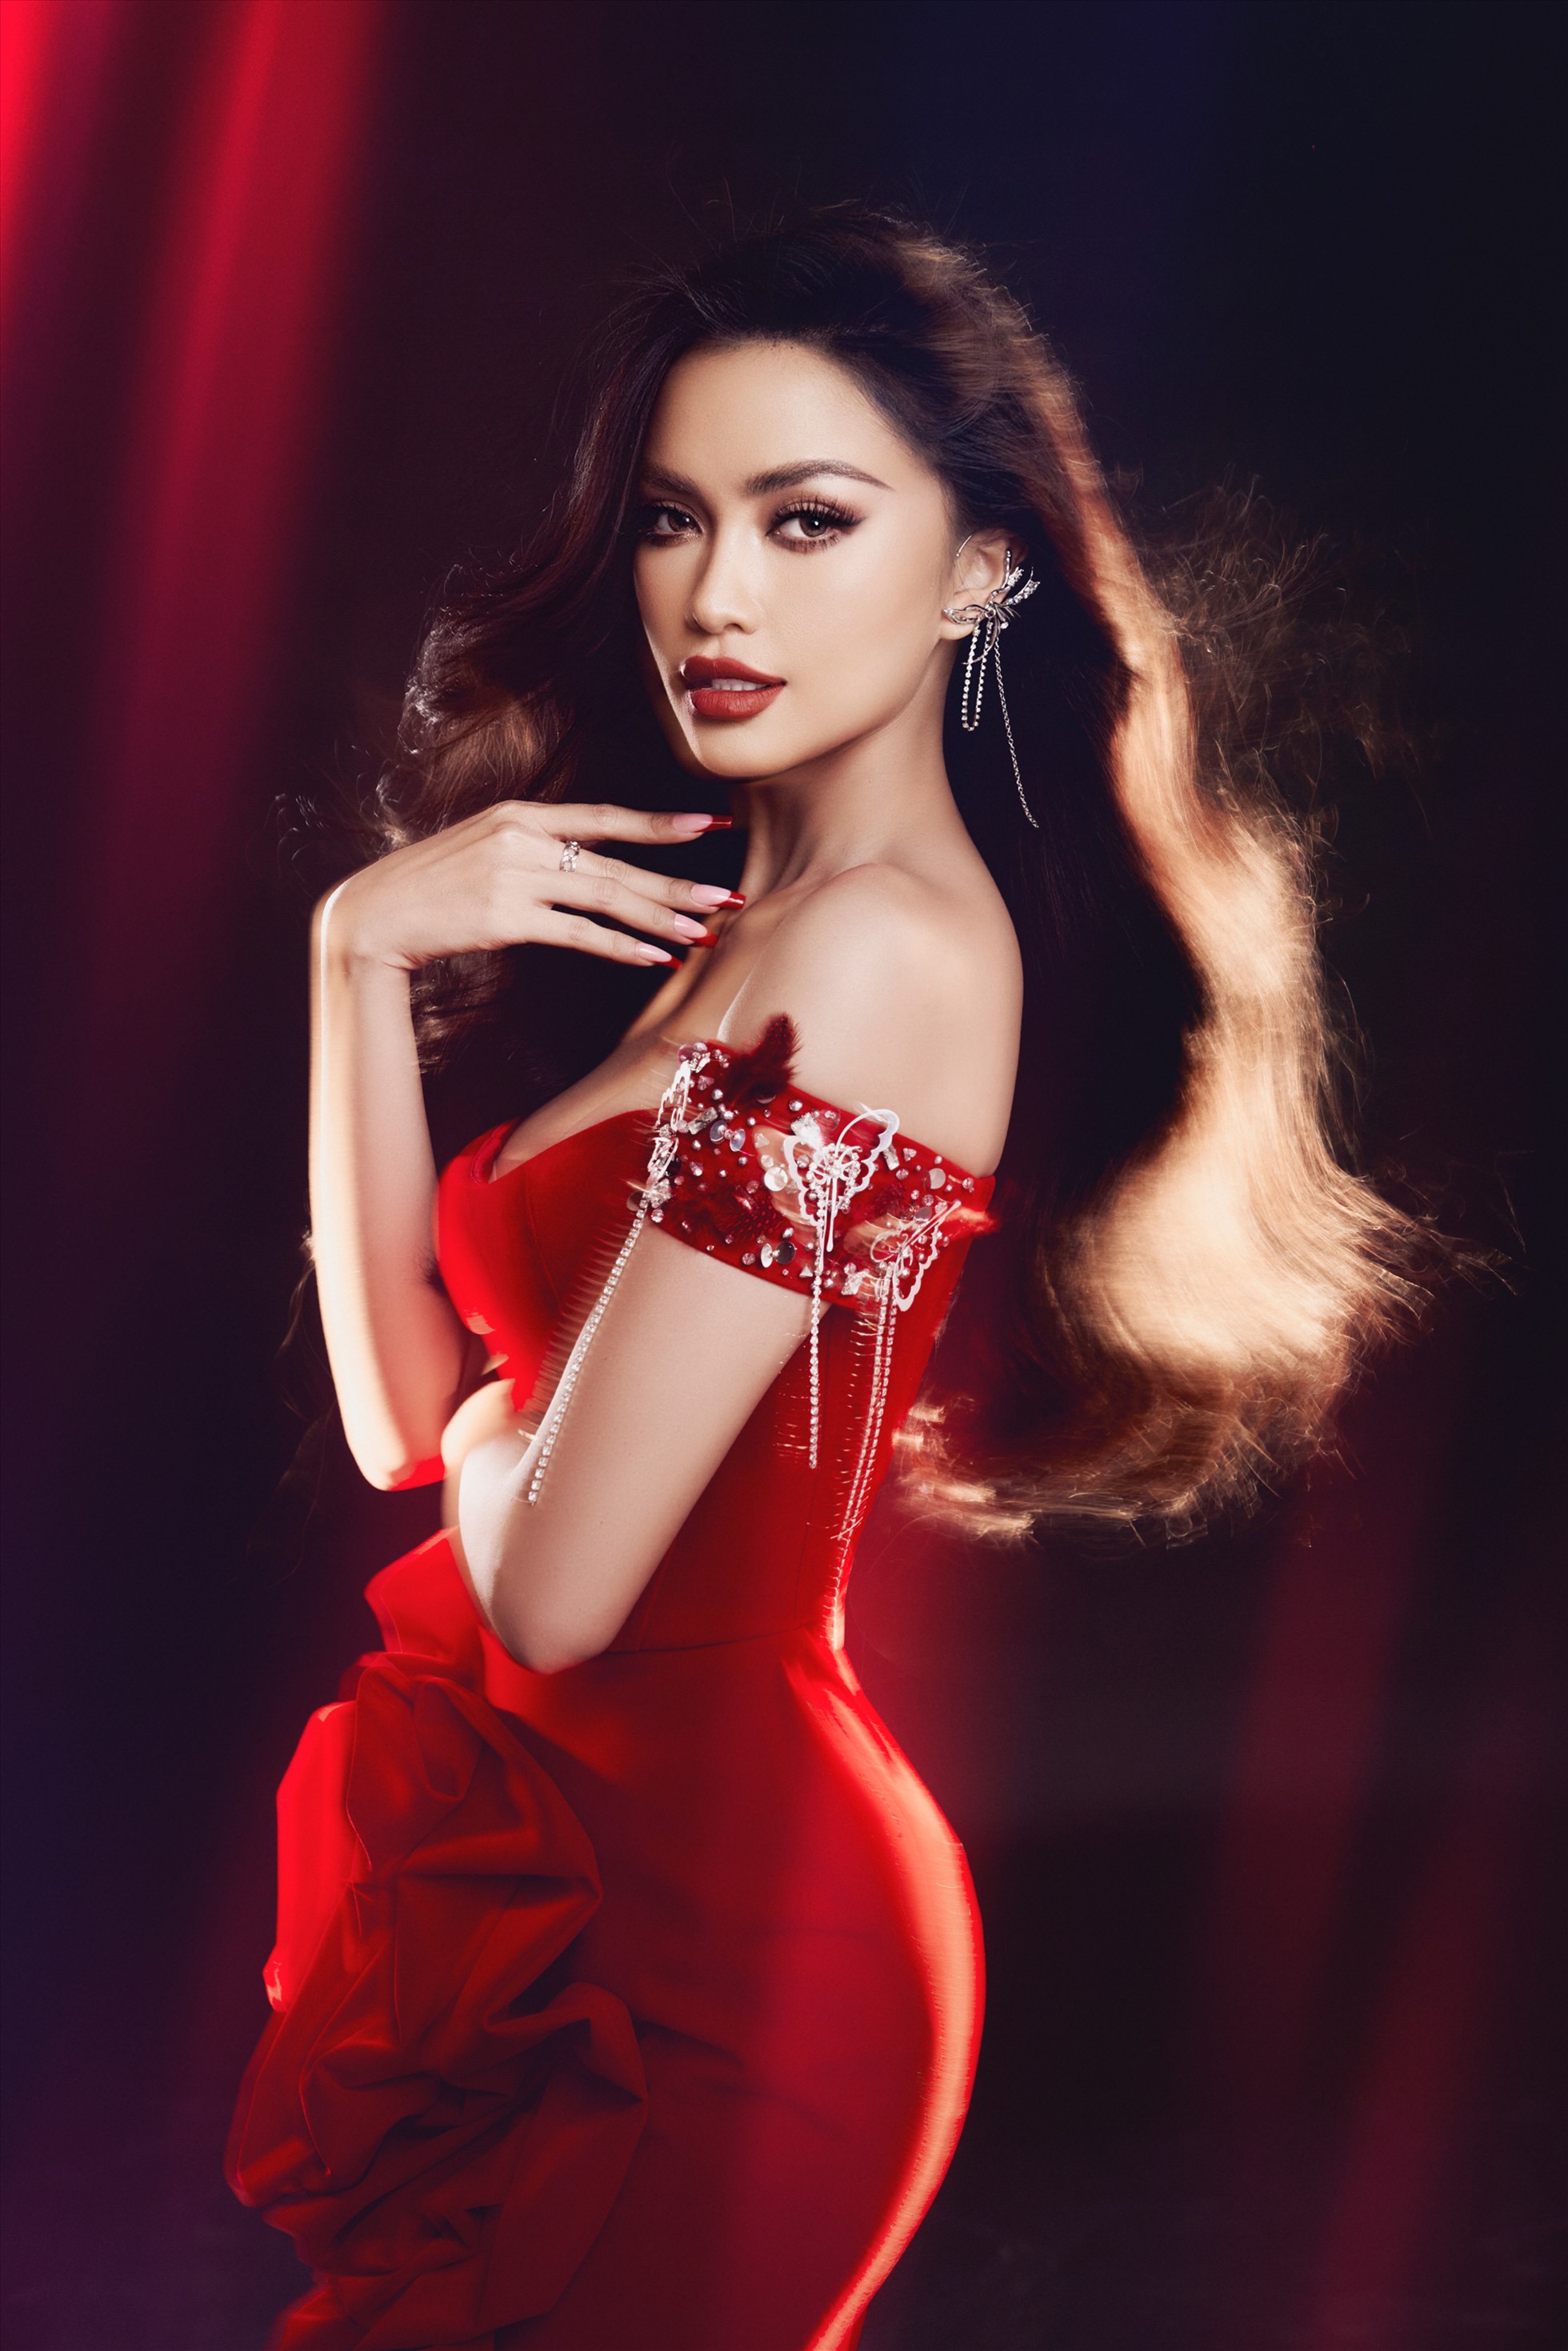 Ngọc Châu - Hoa hậu tài năng và vẻ đẹp tuyệt trần. Hình ảnh của cô sẽ khiến bạn bị quyến rũ và phải lòng bởi vẻ đẹp tinh khôi, duyên dáng của một mỹ nhân đích thực.